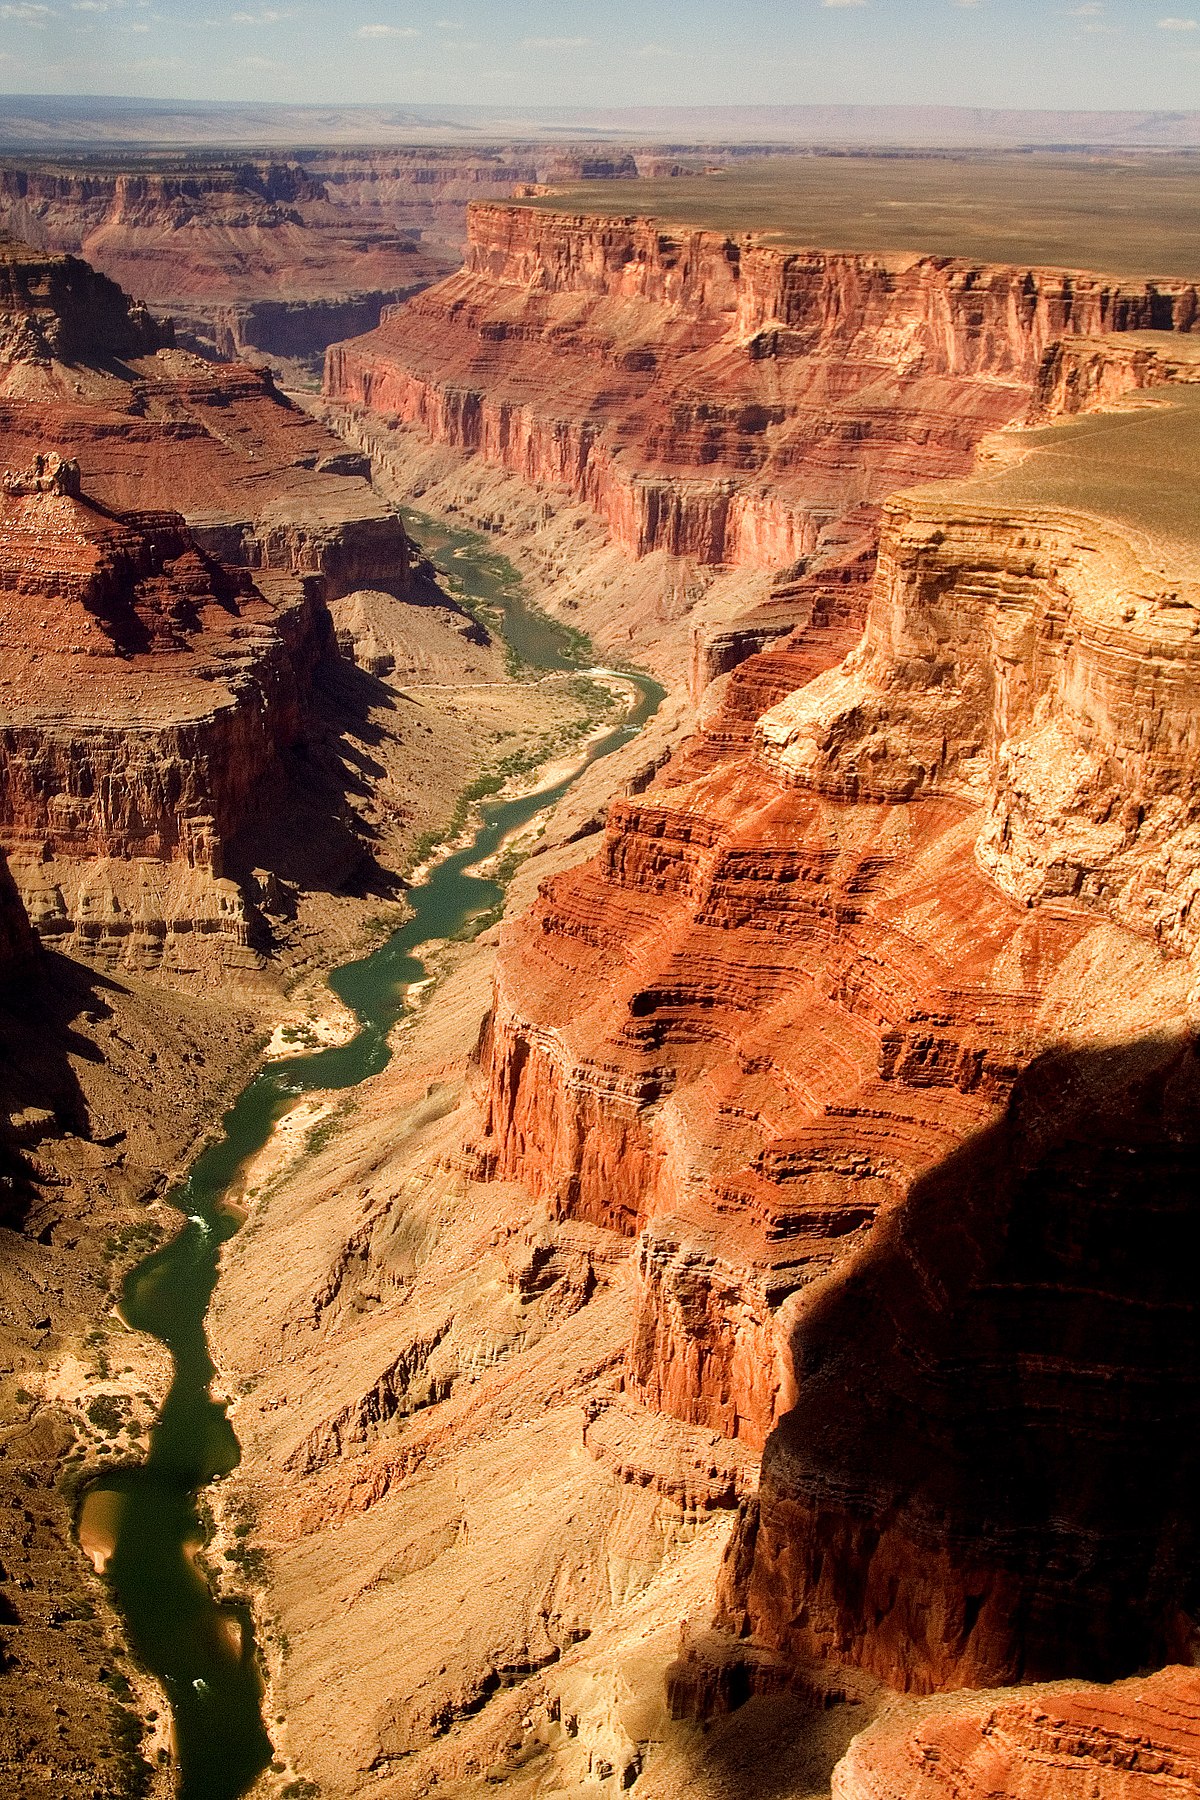 Parco nazionale del Grand Canyon - Wikipedia